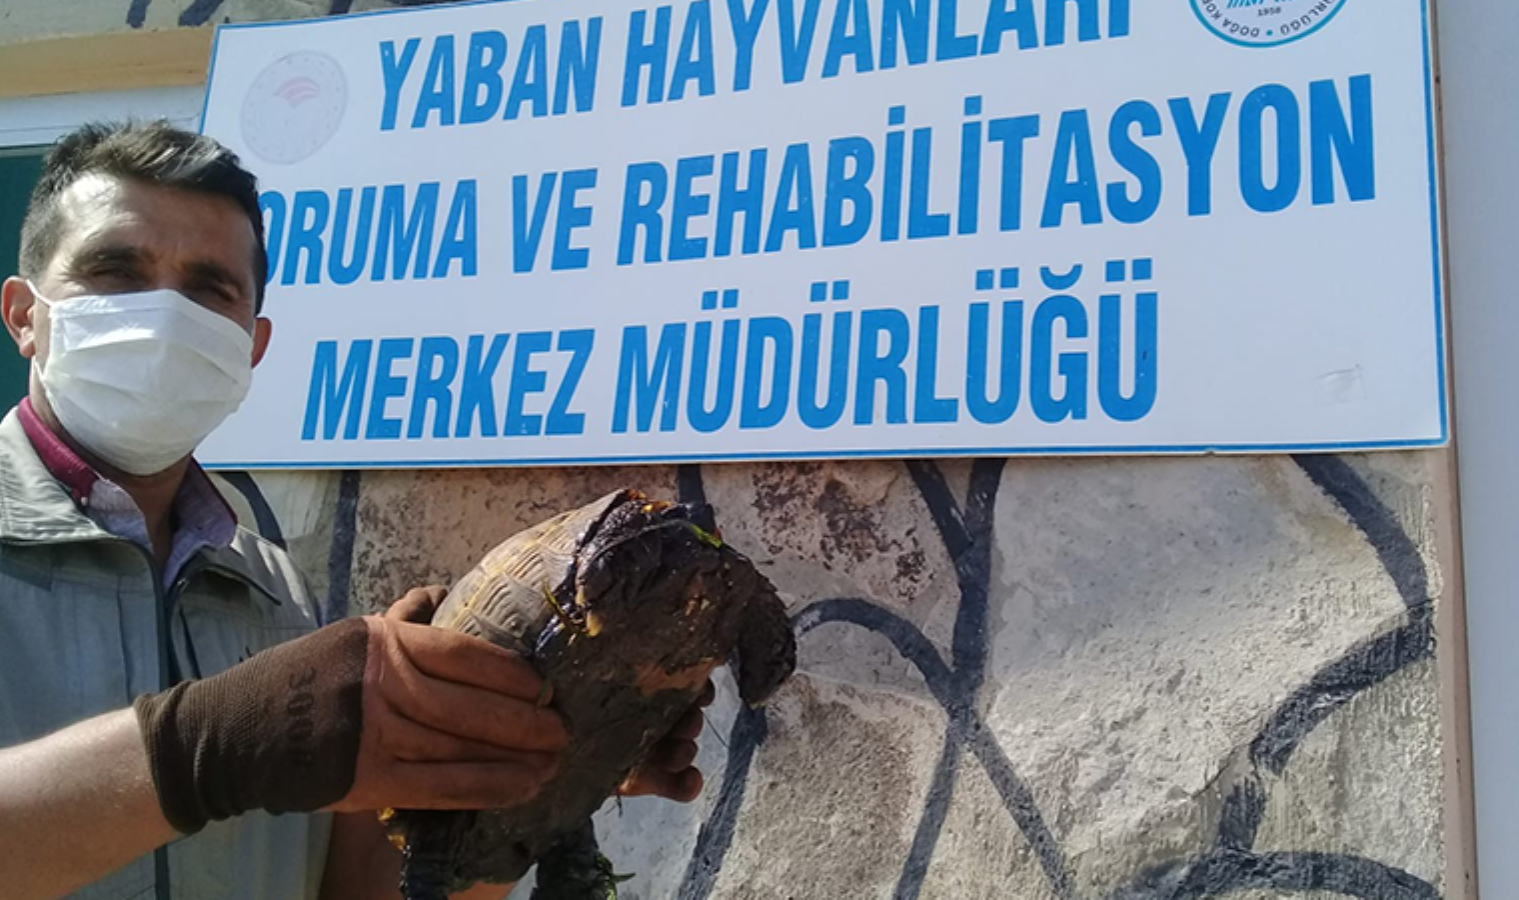 Ziftte bulanmış kaplumbağa temizlenerek doğaya salındı